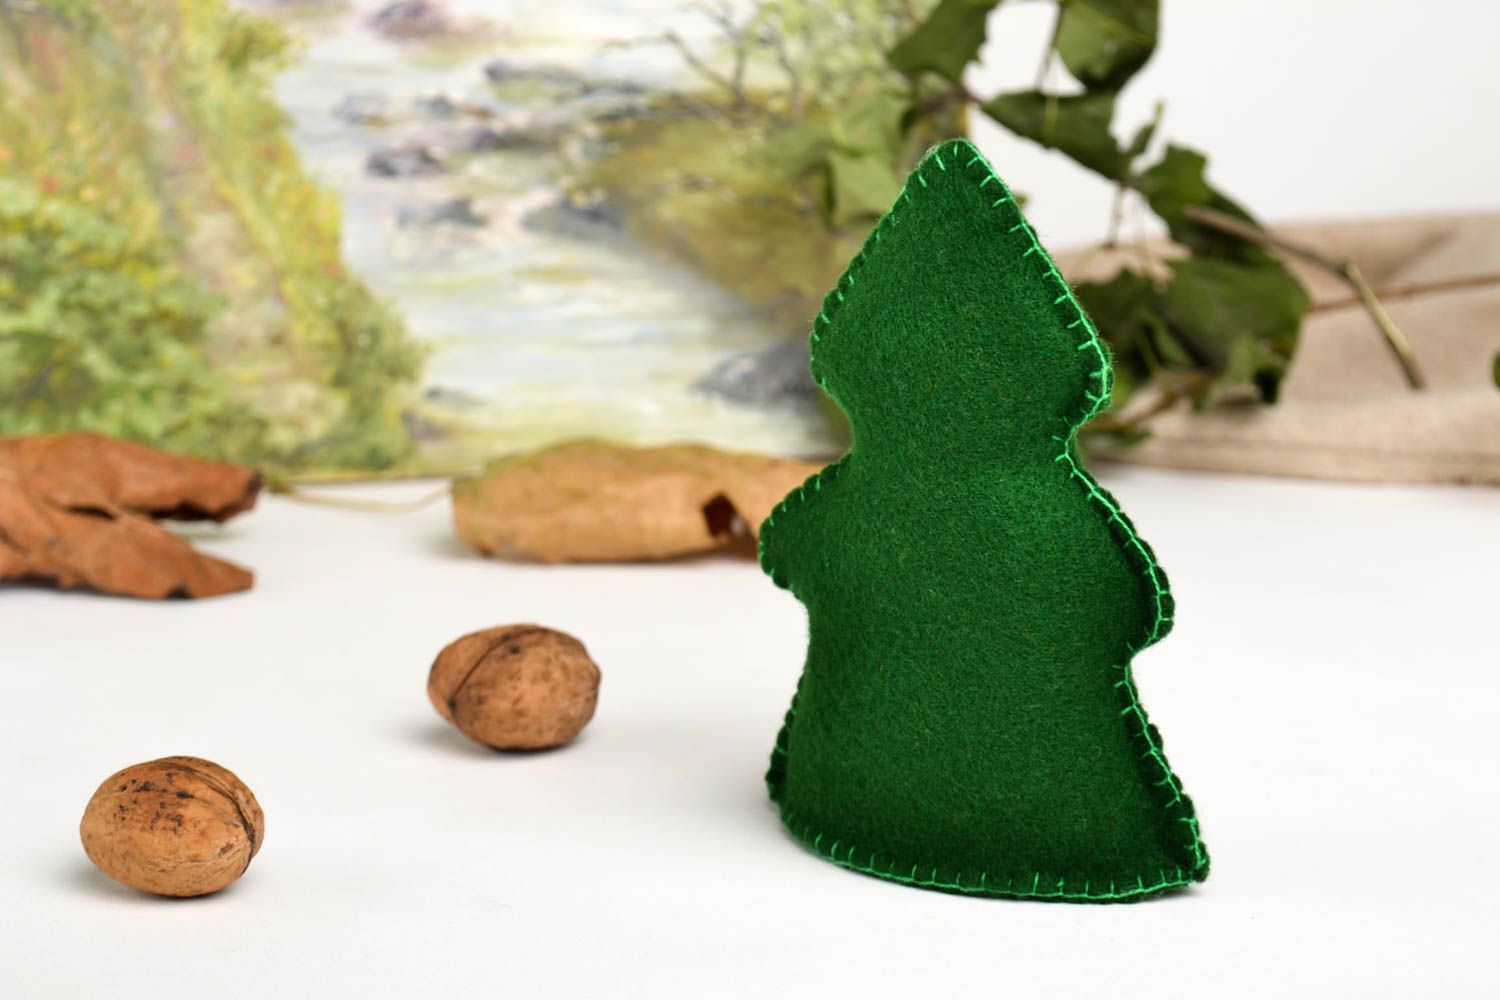 Игрушка ручной работы зеленая елка фетровая игрушка для детей декор для дома фото 1